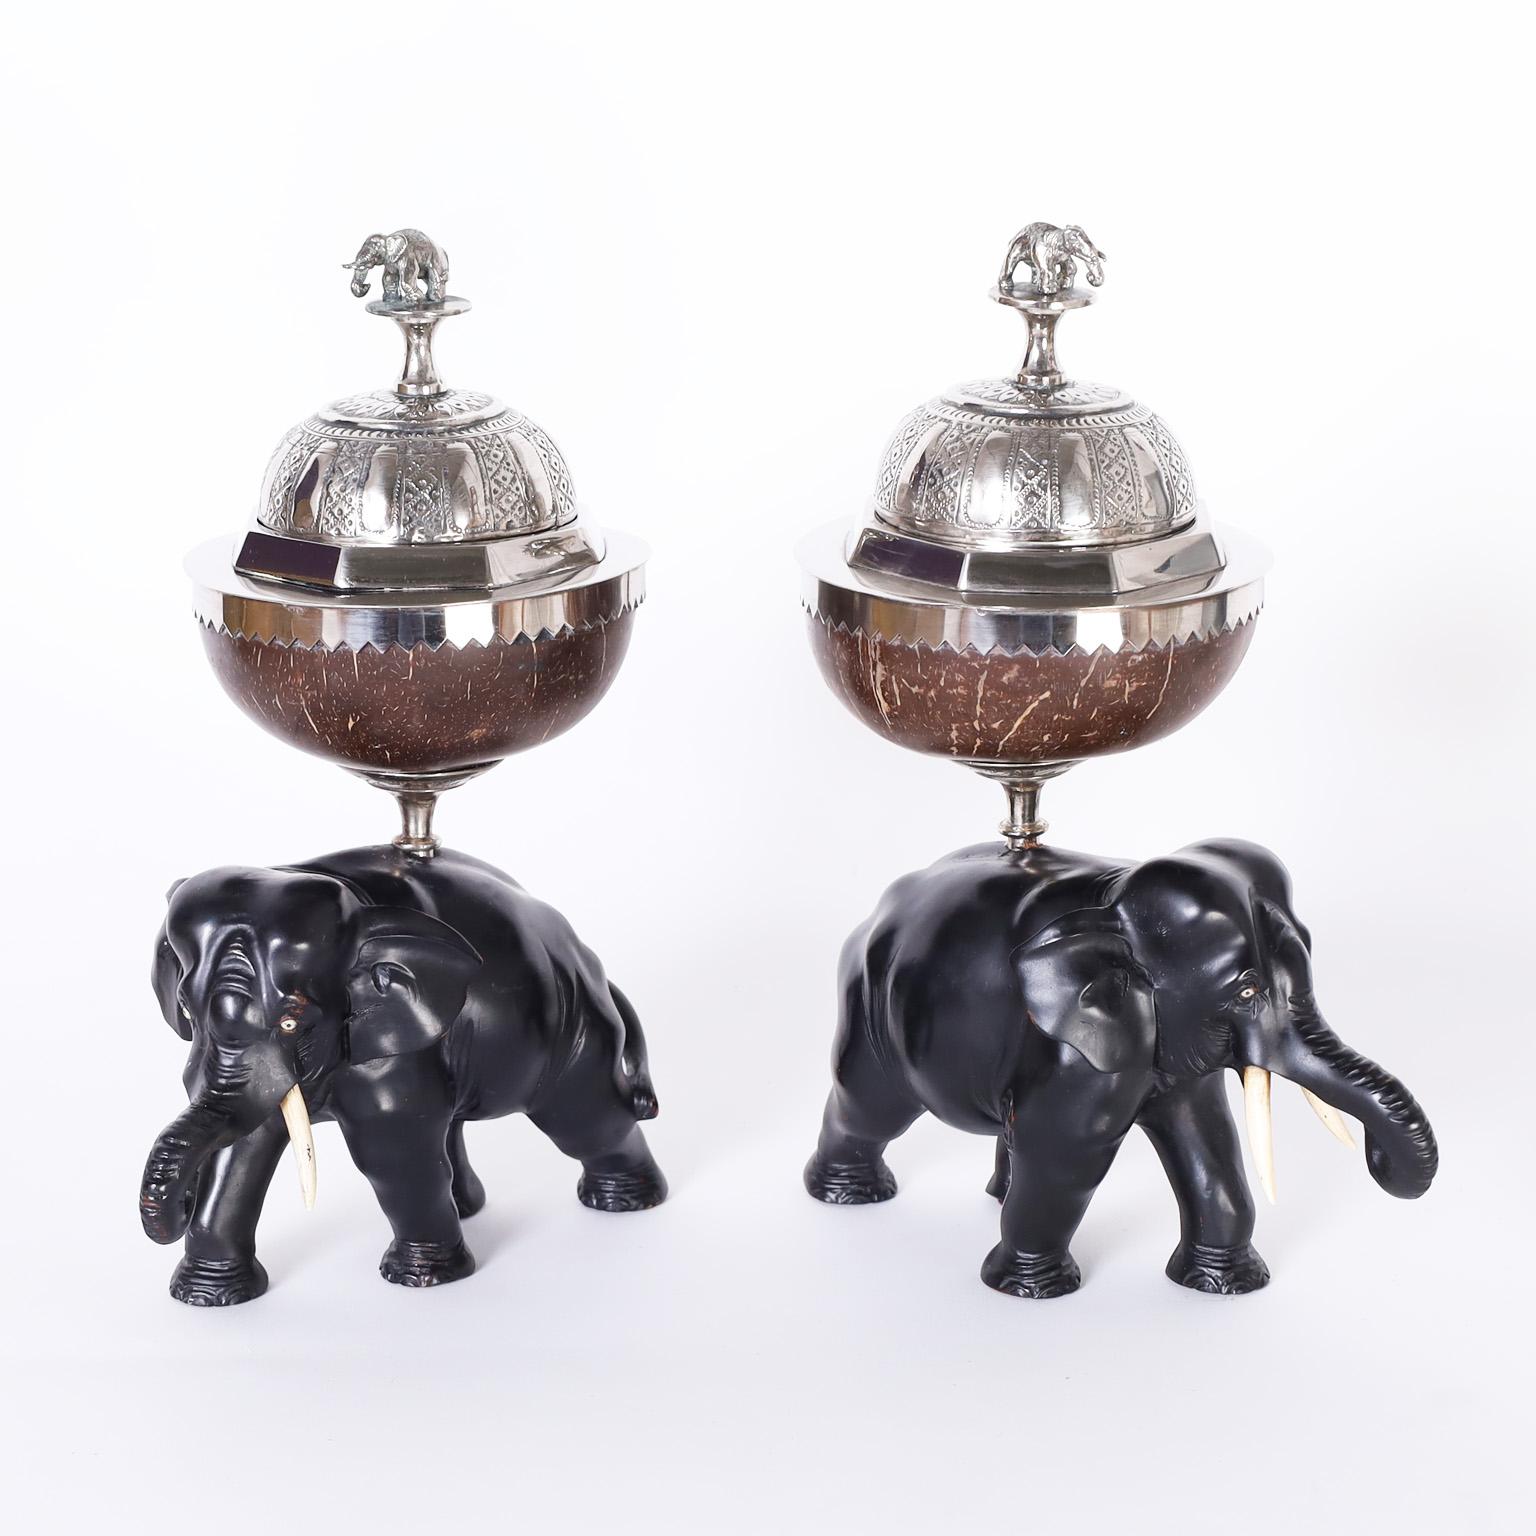 Antike anglo-indische Teedosen mit versilberten Metalldeckeln mit Elefantengriffen über Kokosnussschalen und geschnitzten Elefanten aus Ebenholz mit Stoßzähnen und Augen aus Knochen.